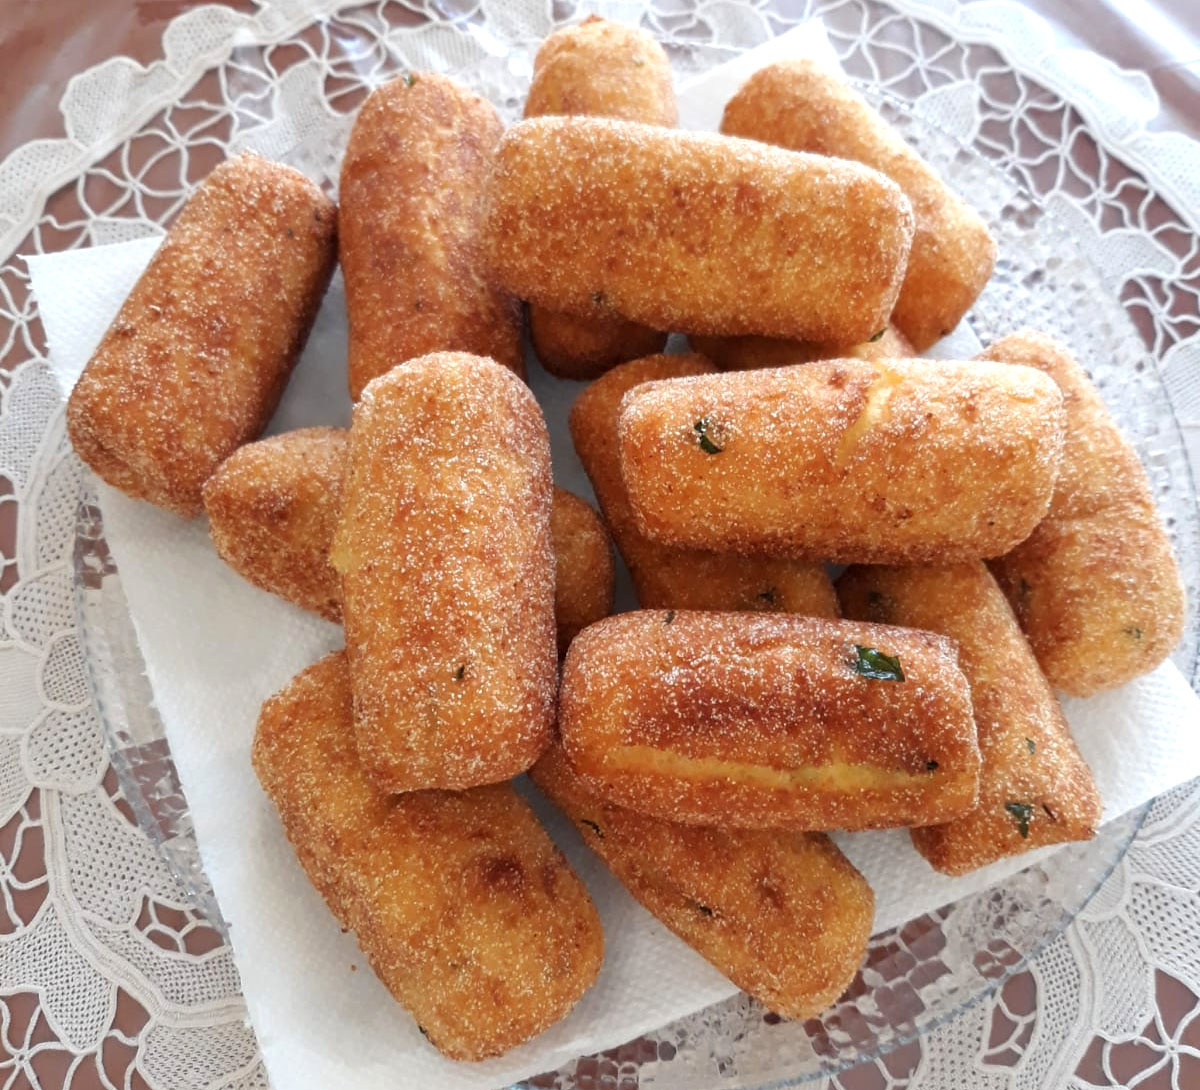 Ricetta dei panzarotti napoletani tradizionali con la sugna